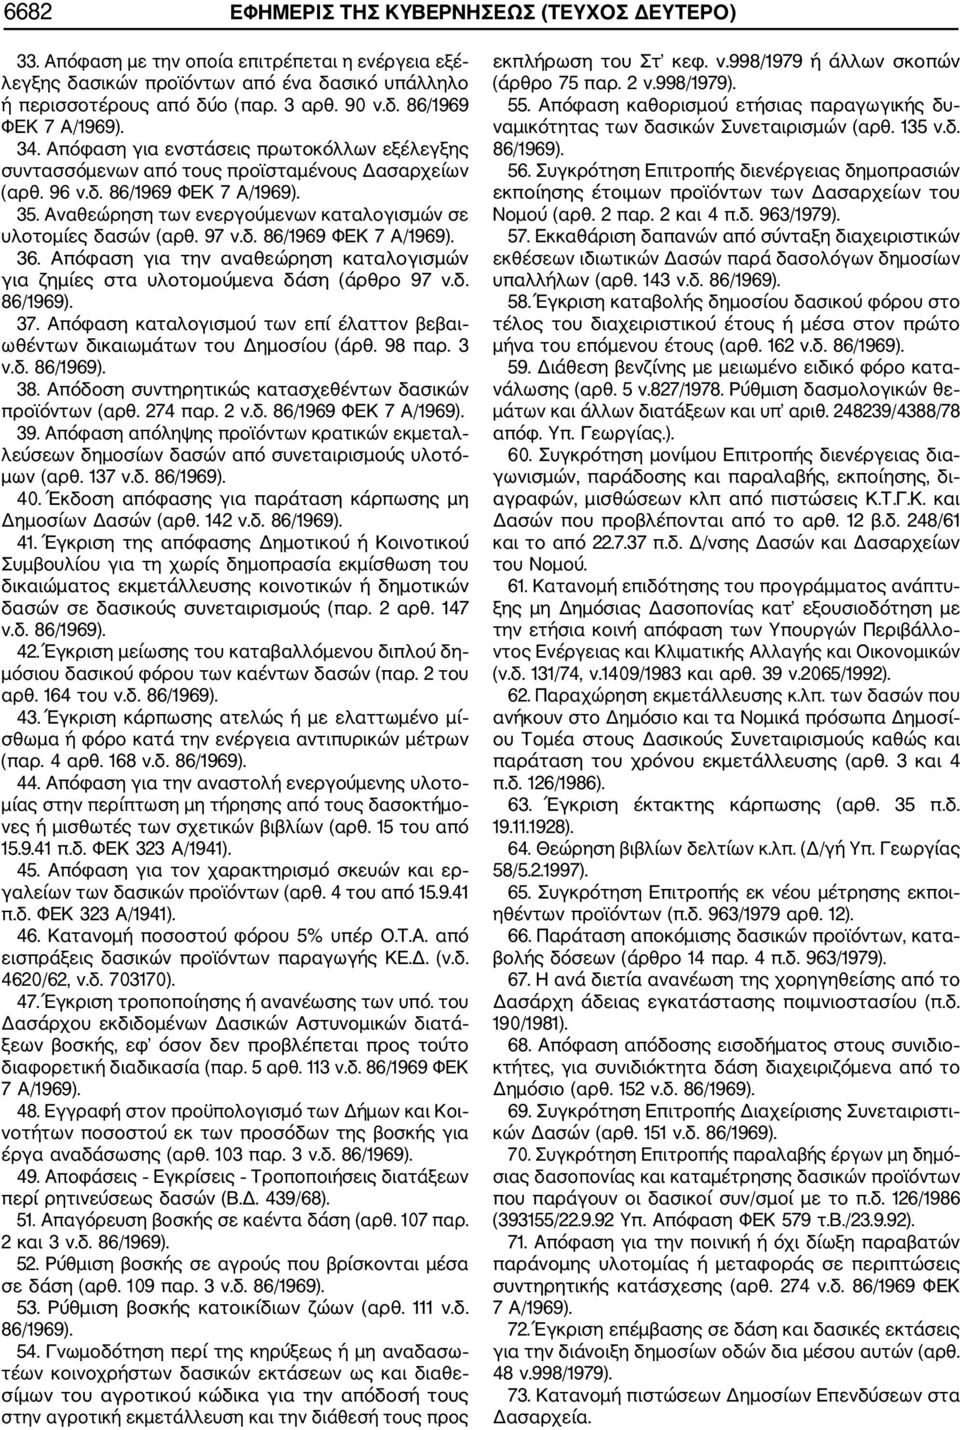 Αναθεώρηση των ενεργούμενων καταλογισμών σε υλοτομίες δασών (αρθ. 97 ν.δ. 86/1969 ΦΕΚ 7 Α/1969). 36. Απόφαση για την αναθεώρηση καταλογισμών για ζημίες στα υλοτομούμενα δάση (άρθρο 97 ν.δ. 86/1969).